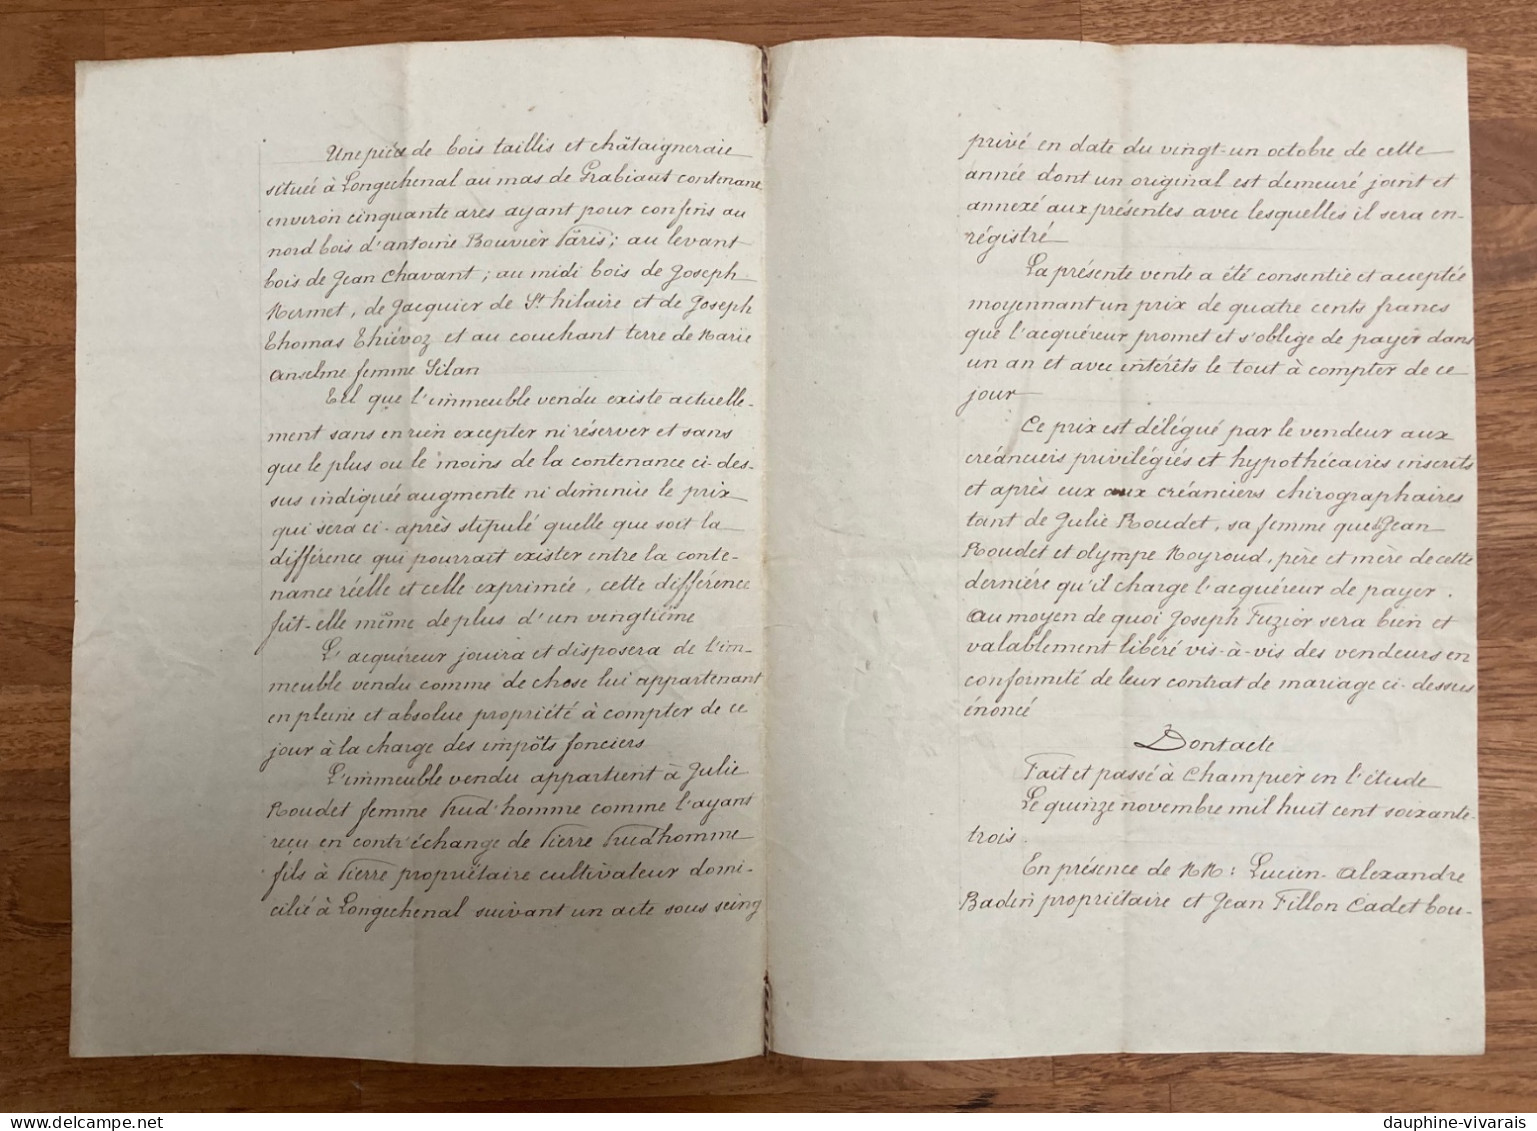 PAPIER TIMBRE 1863  2EME EMPIRE - LONGCHENAL 38 ISERE - VENTE  PRUDHOMME ROUDET FUZIER - Briefe U. Dokumente